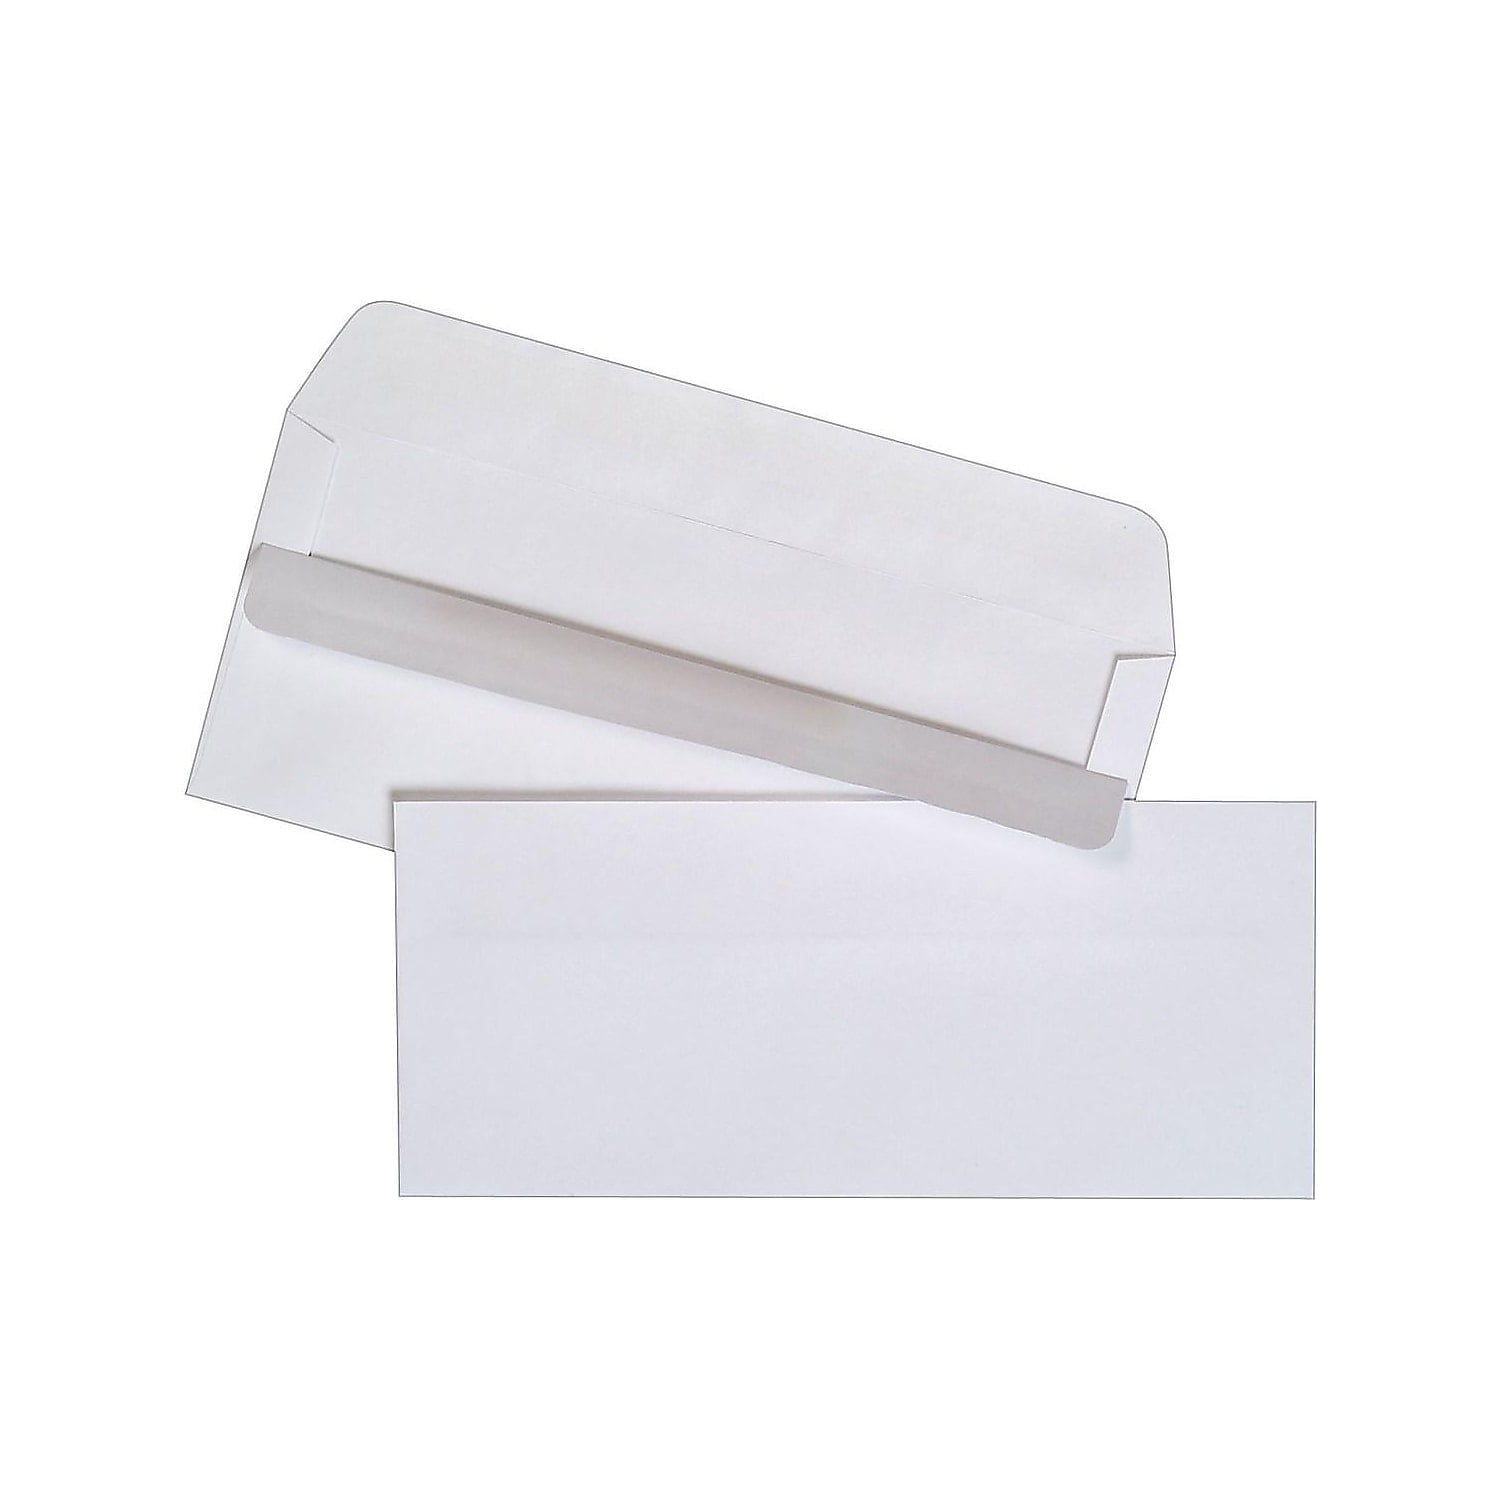 Self-Seal Envelope DL White Plain Letter Paper Envelopes Home School Office 50PK 